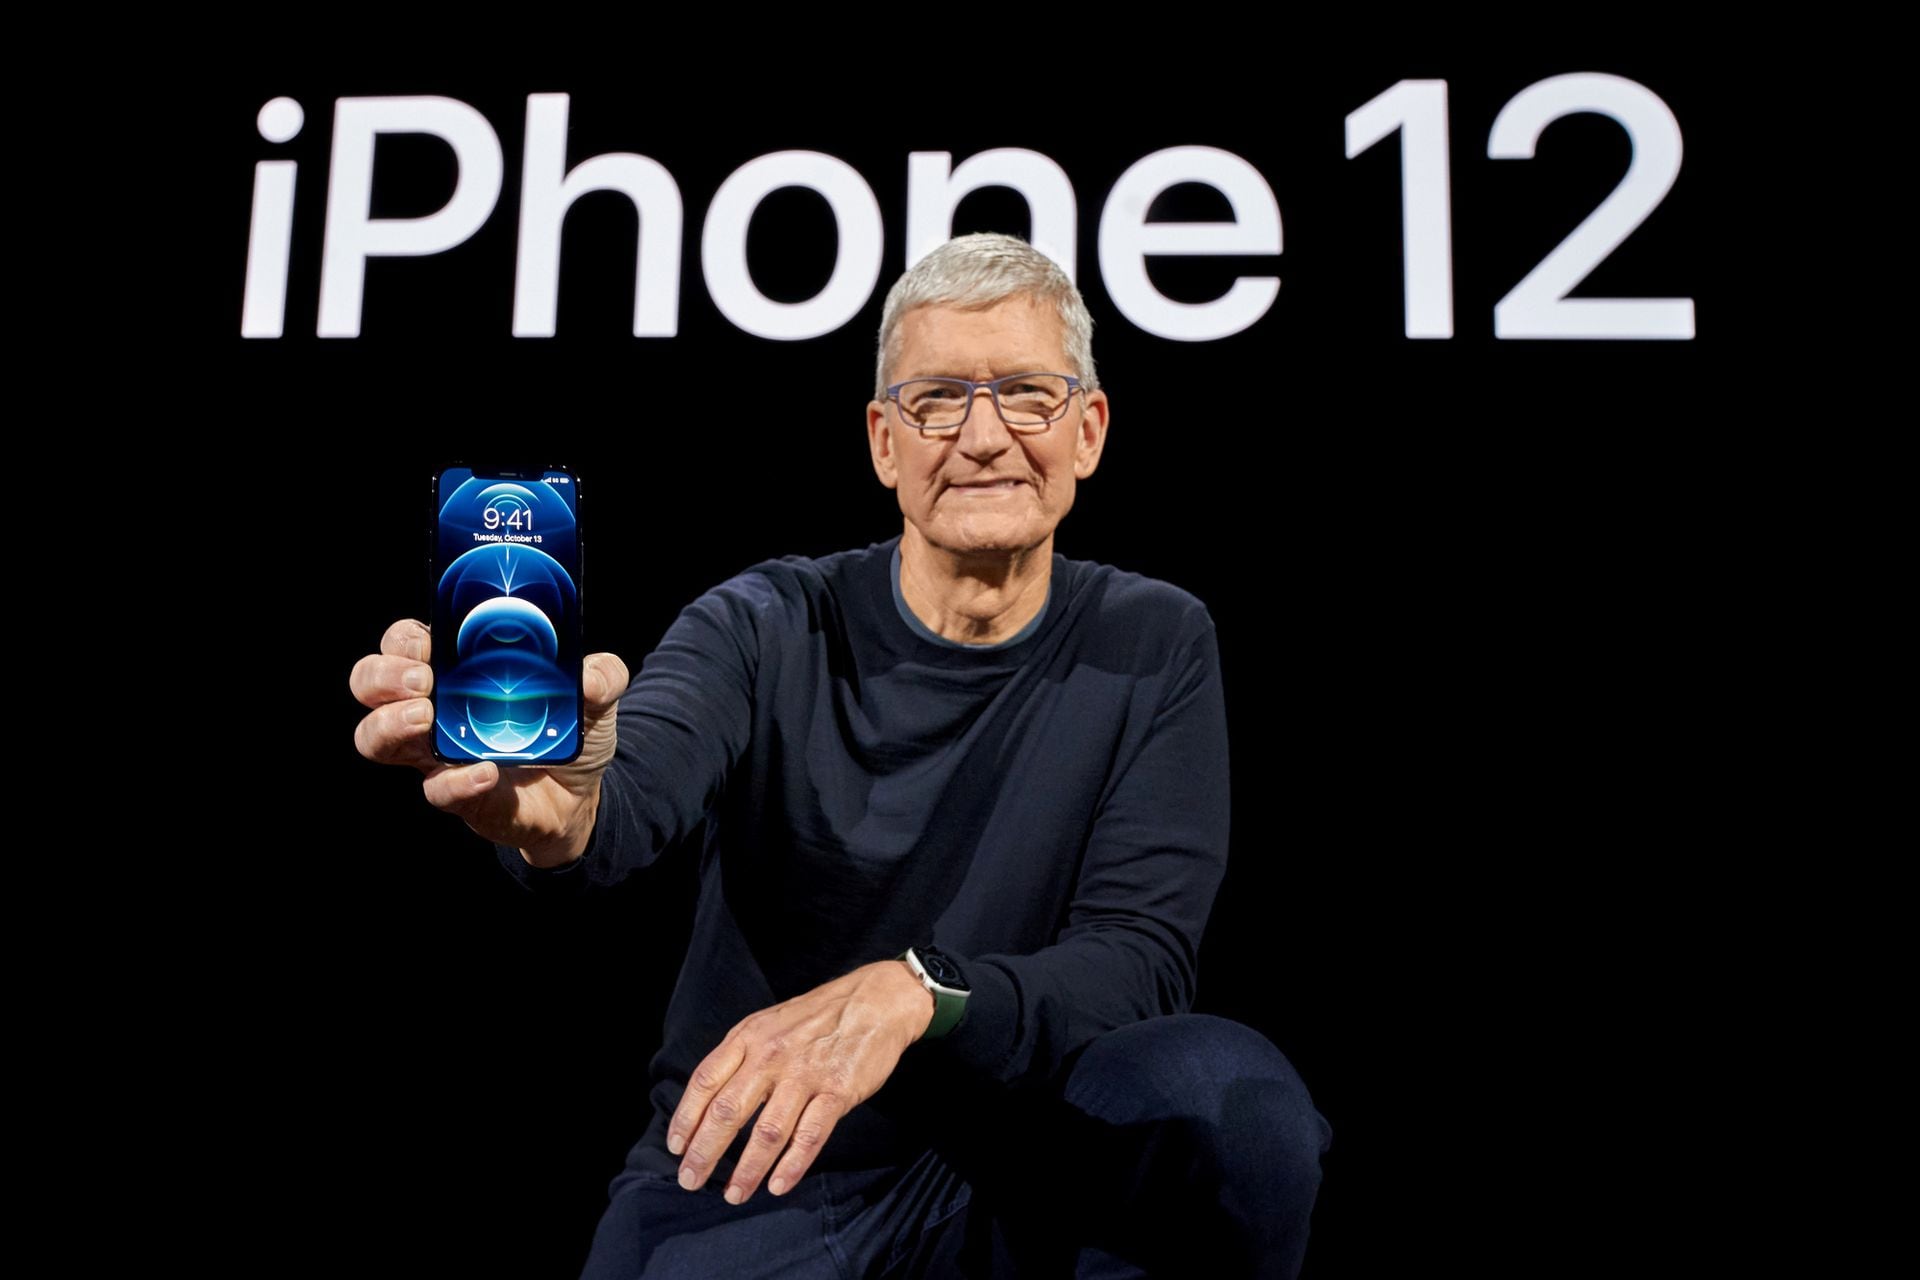 Cook acaba de presentar el iPhone 12